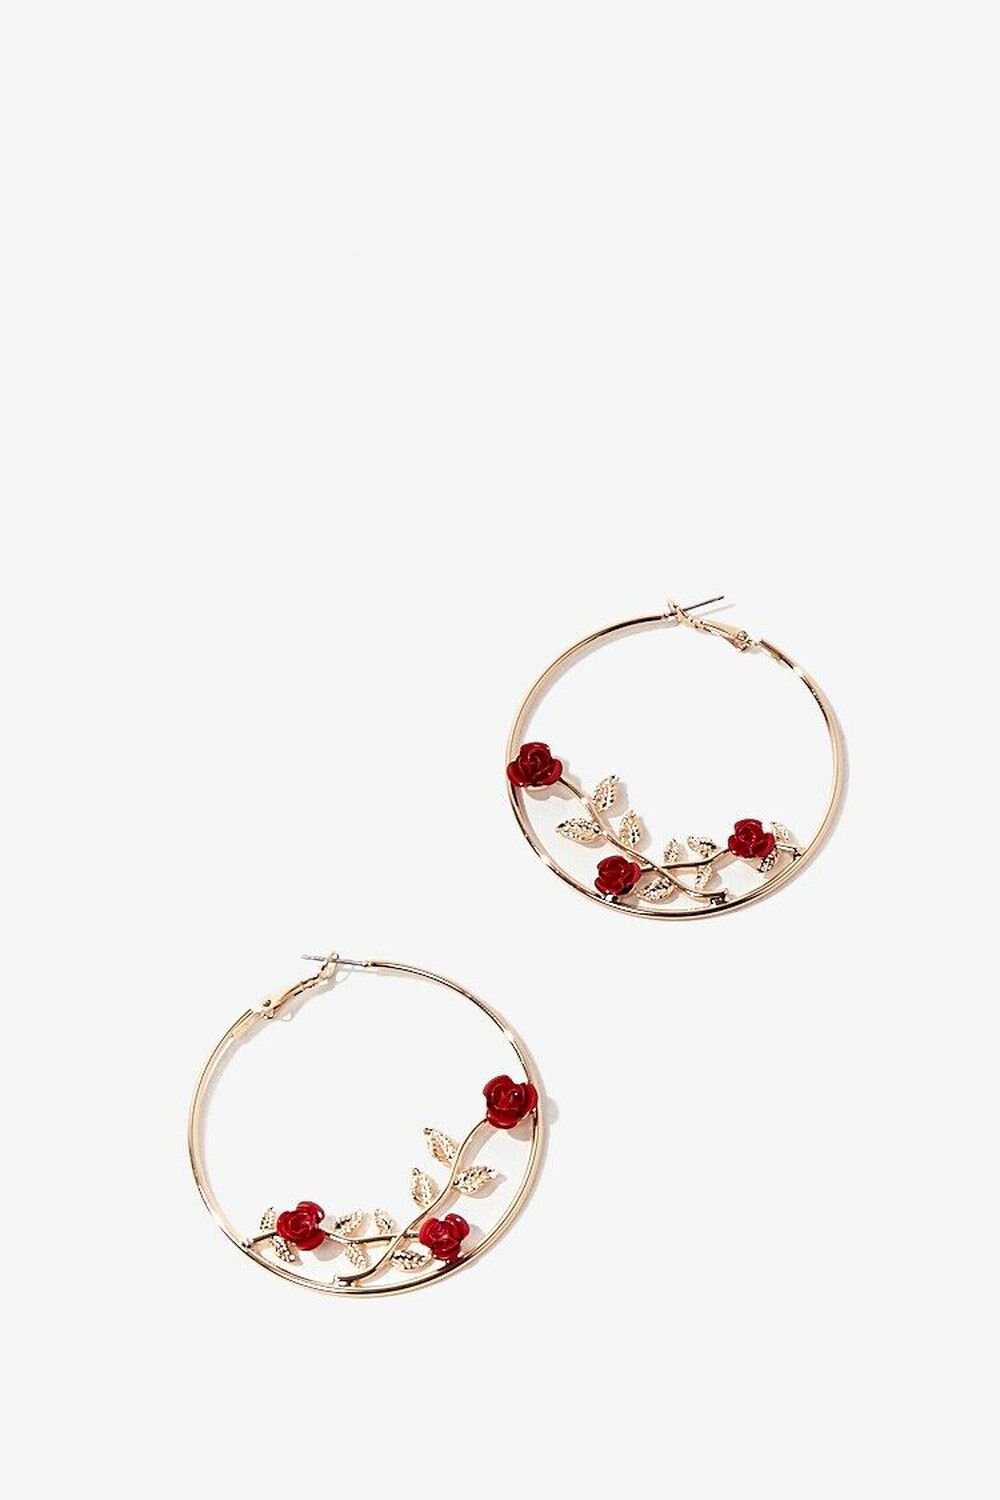 GOLD/RED Rose Hoop Earrings, image 1